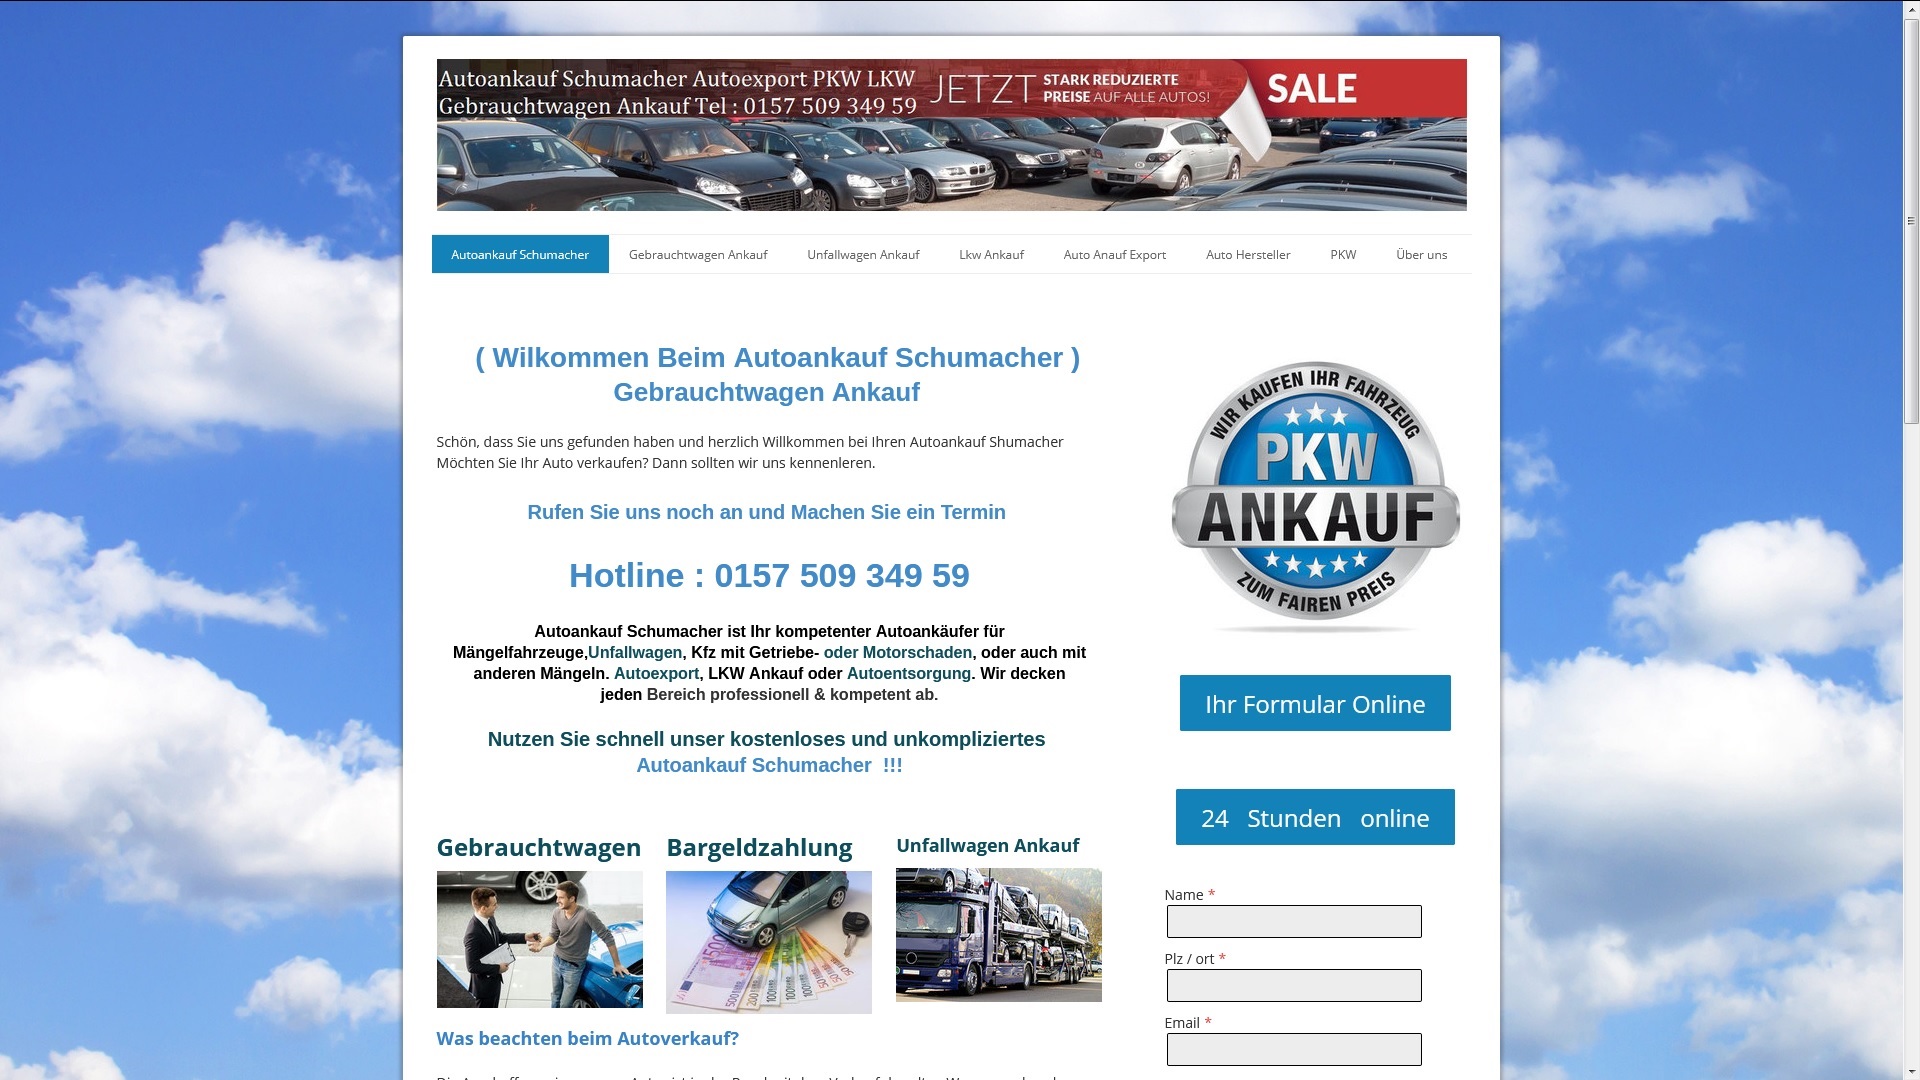 Autoankauf Görlitz ist fokussiert auf PKW unf LKW-Ankauf